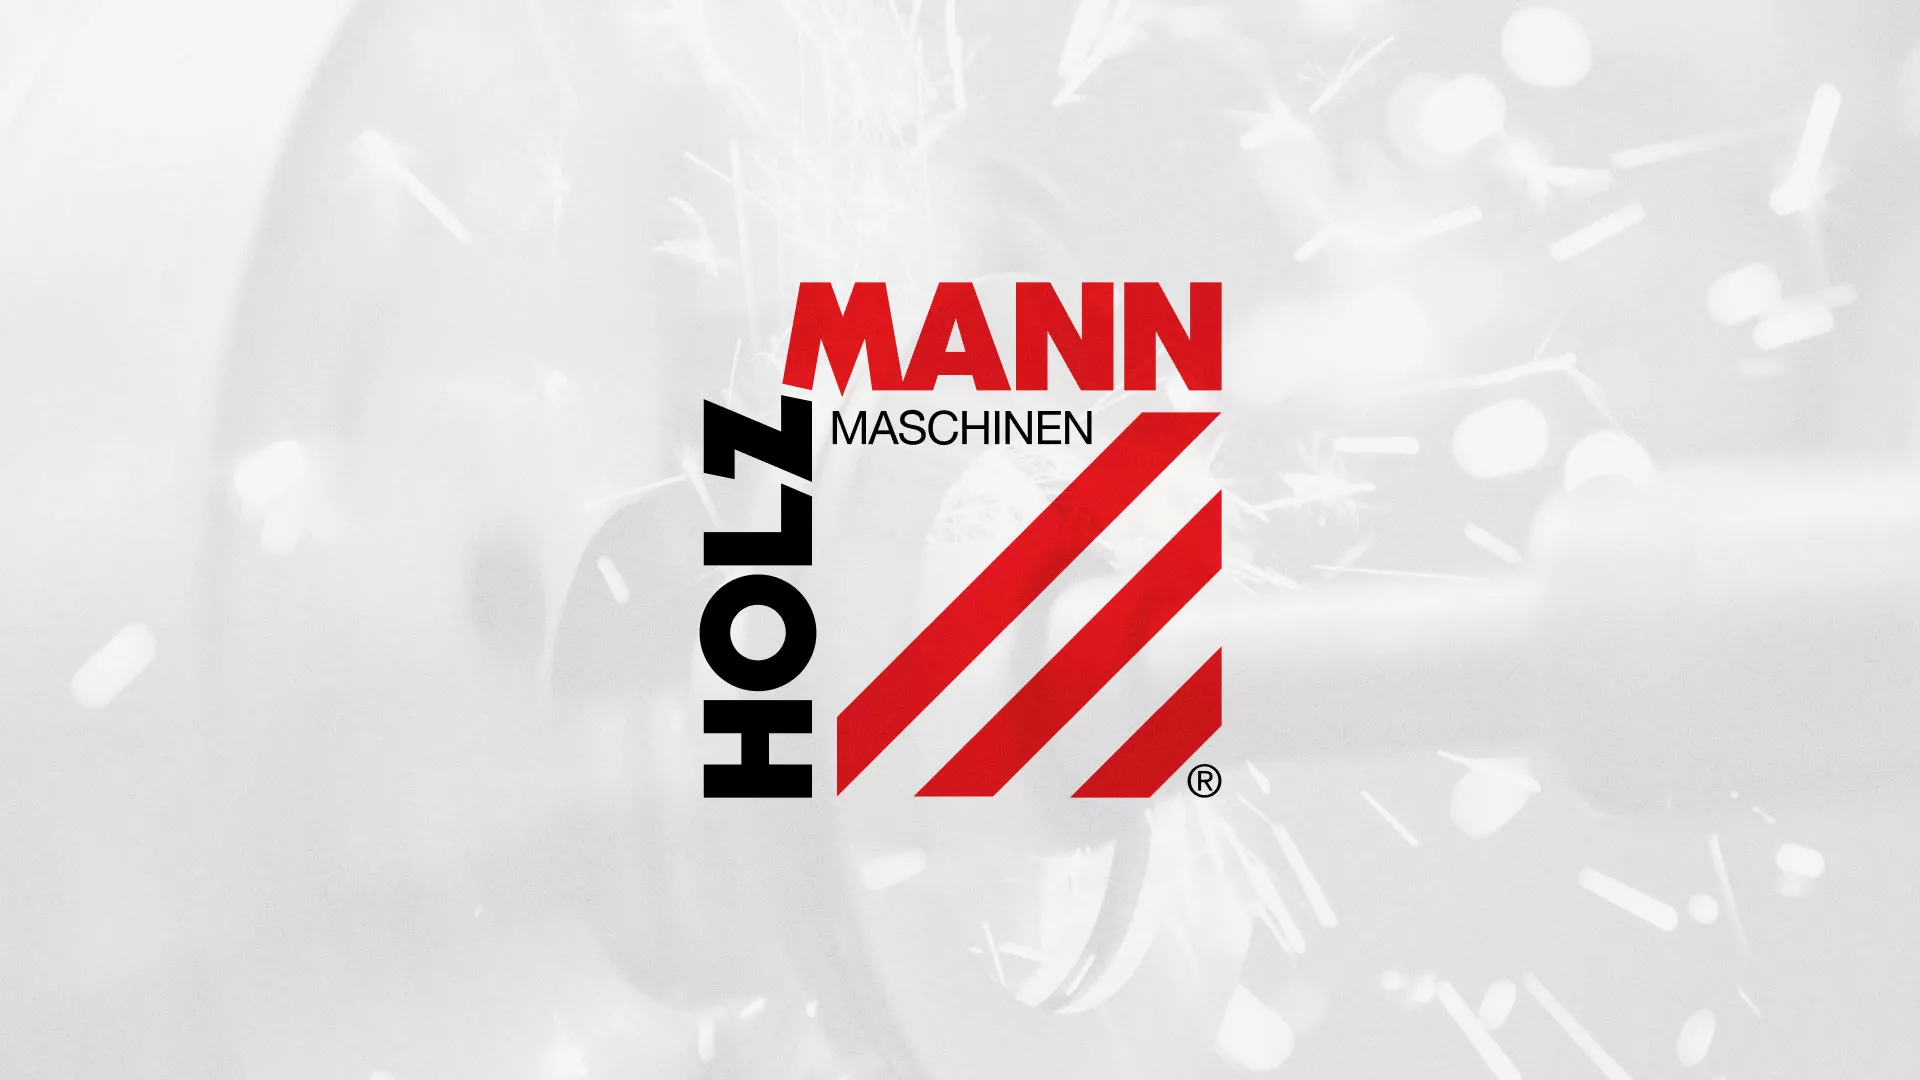 Создание сайта компании «HOLZMANN Maschinen GmbH» в Благовещенске